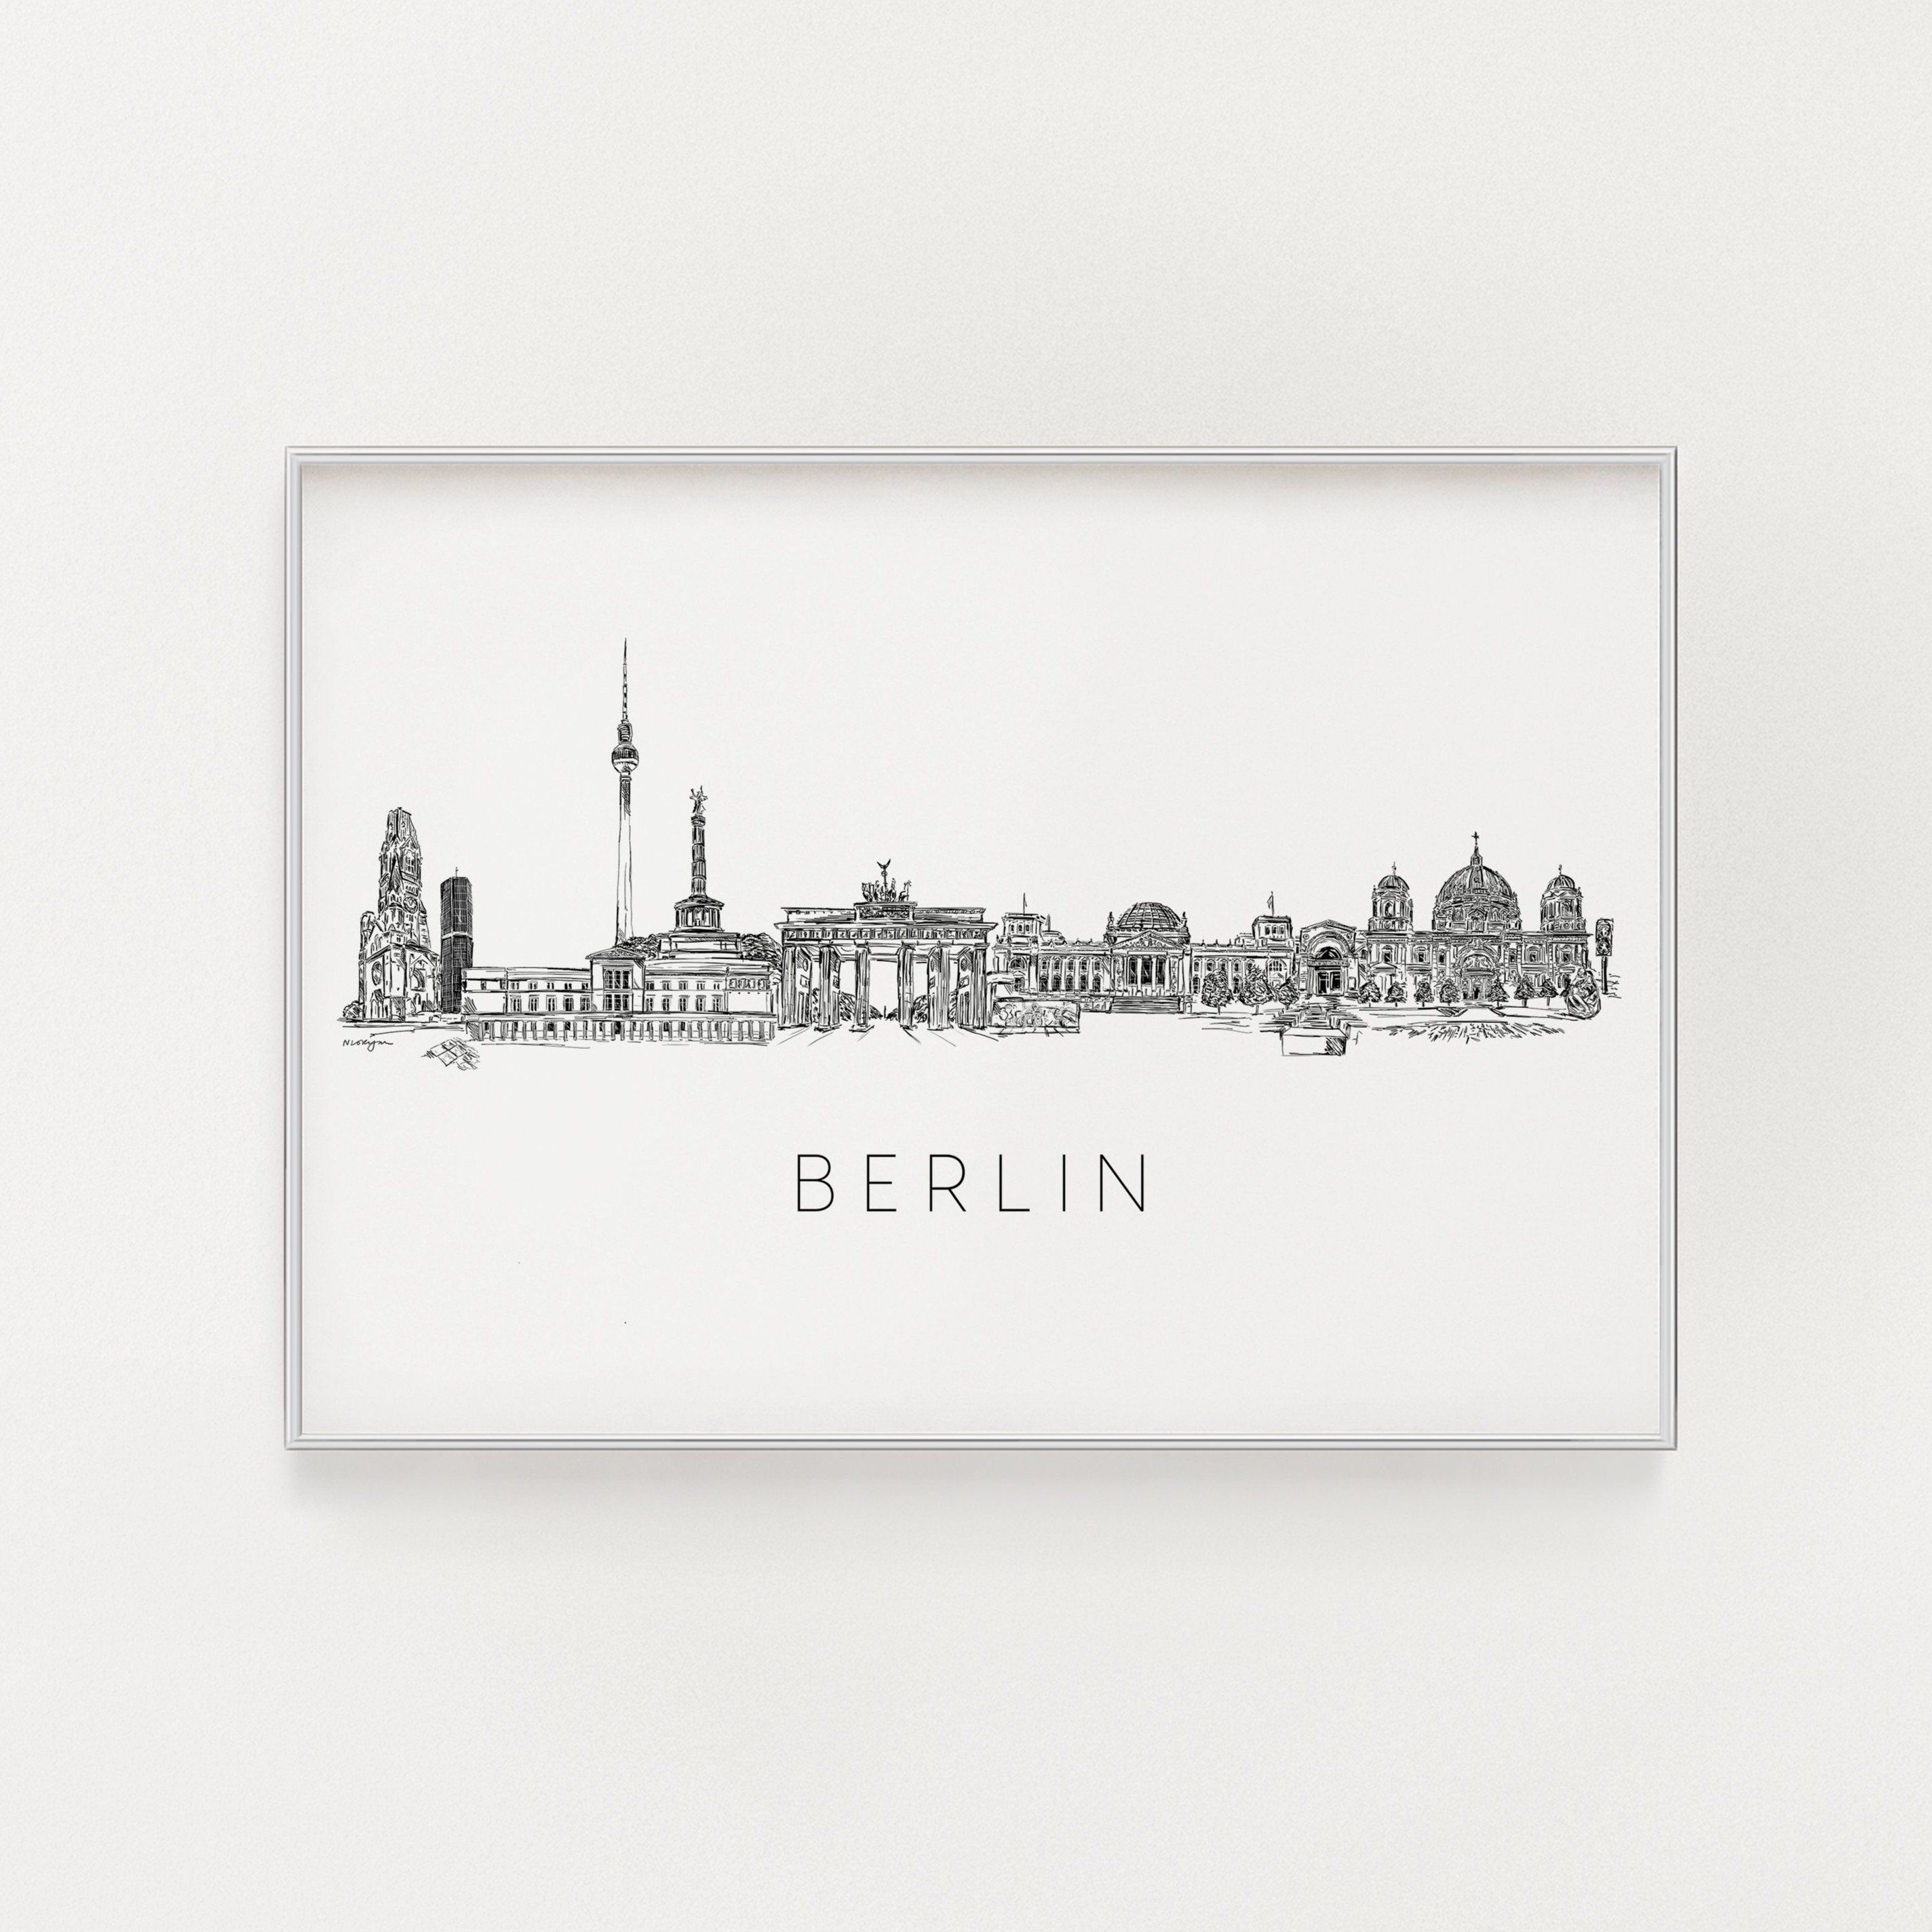 Berlin skyline art print